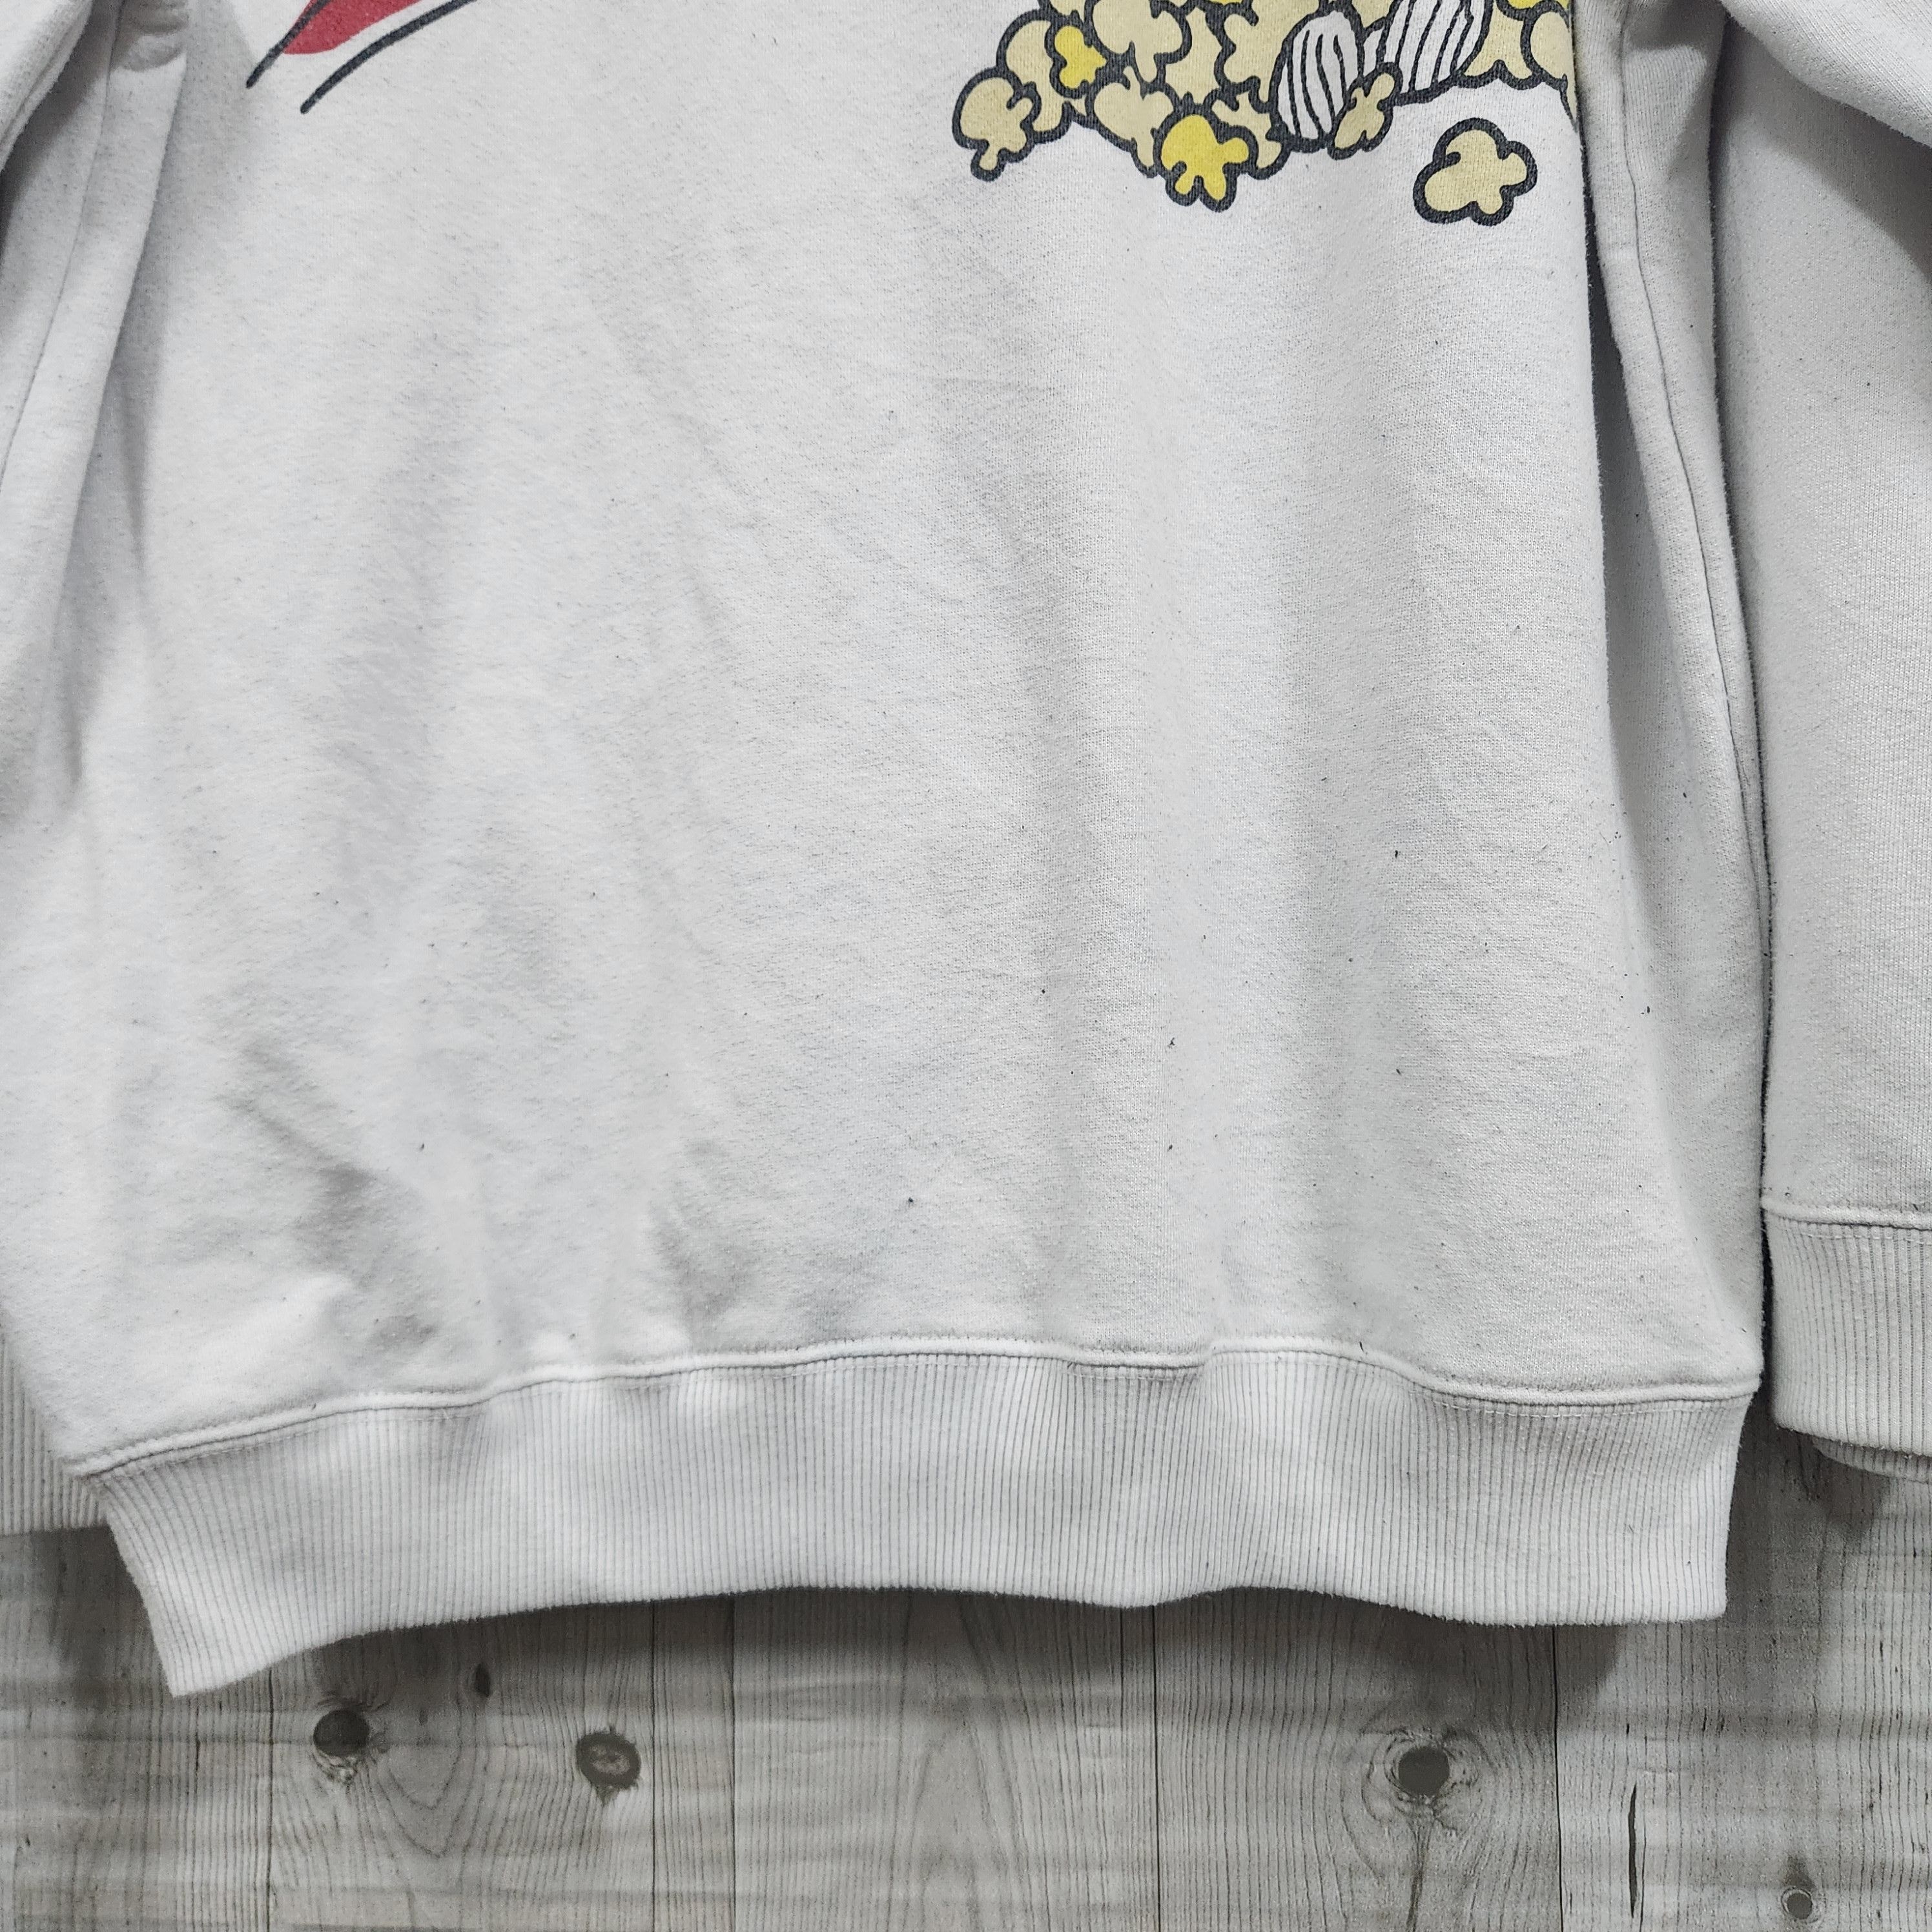 Vintage Peanuts Universal Studios Japan Jumper Sweater - 9